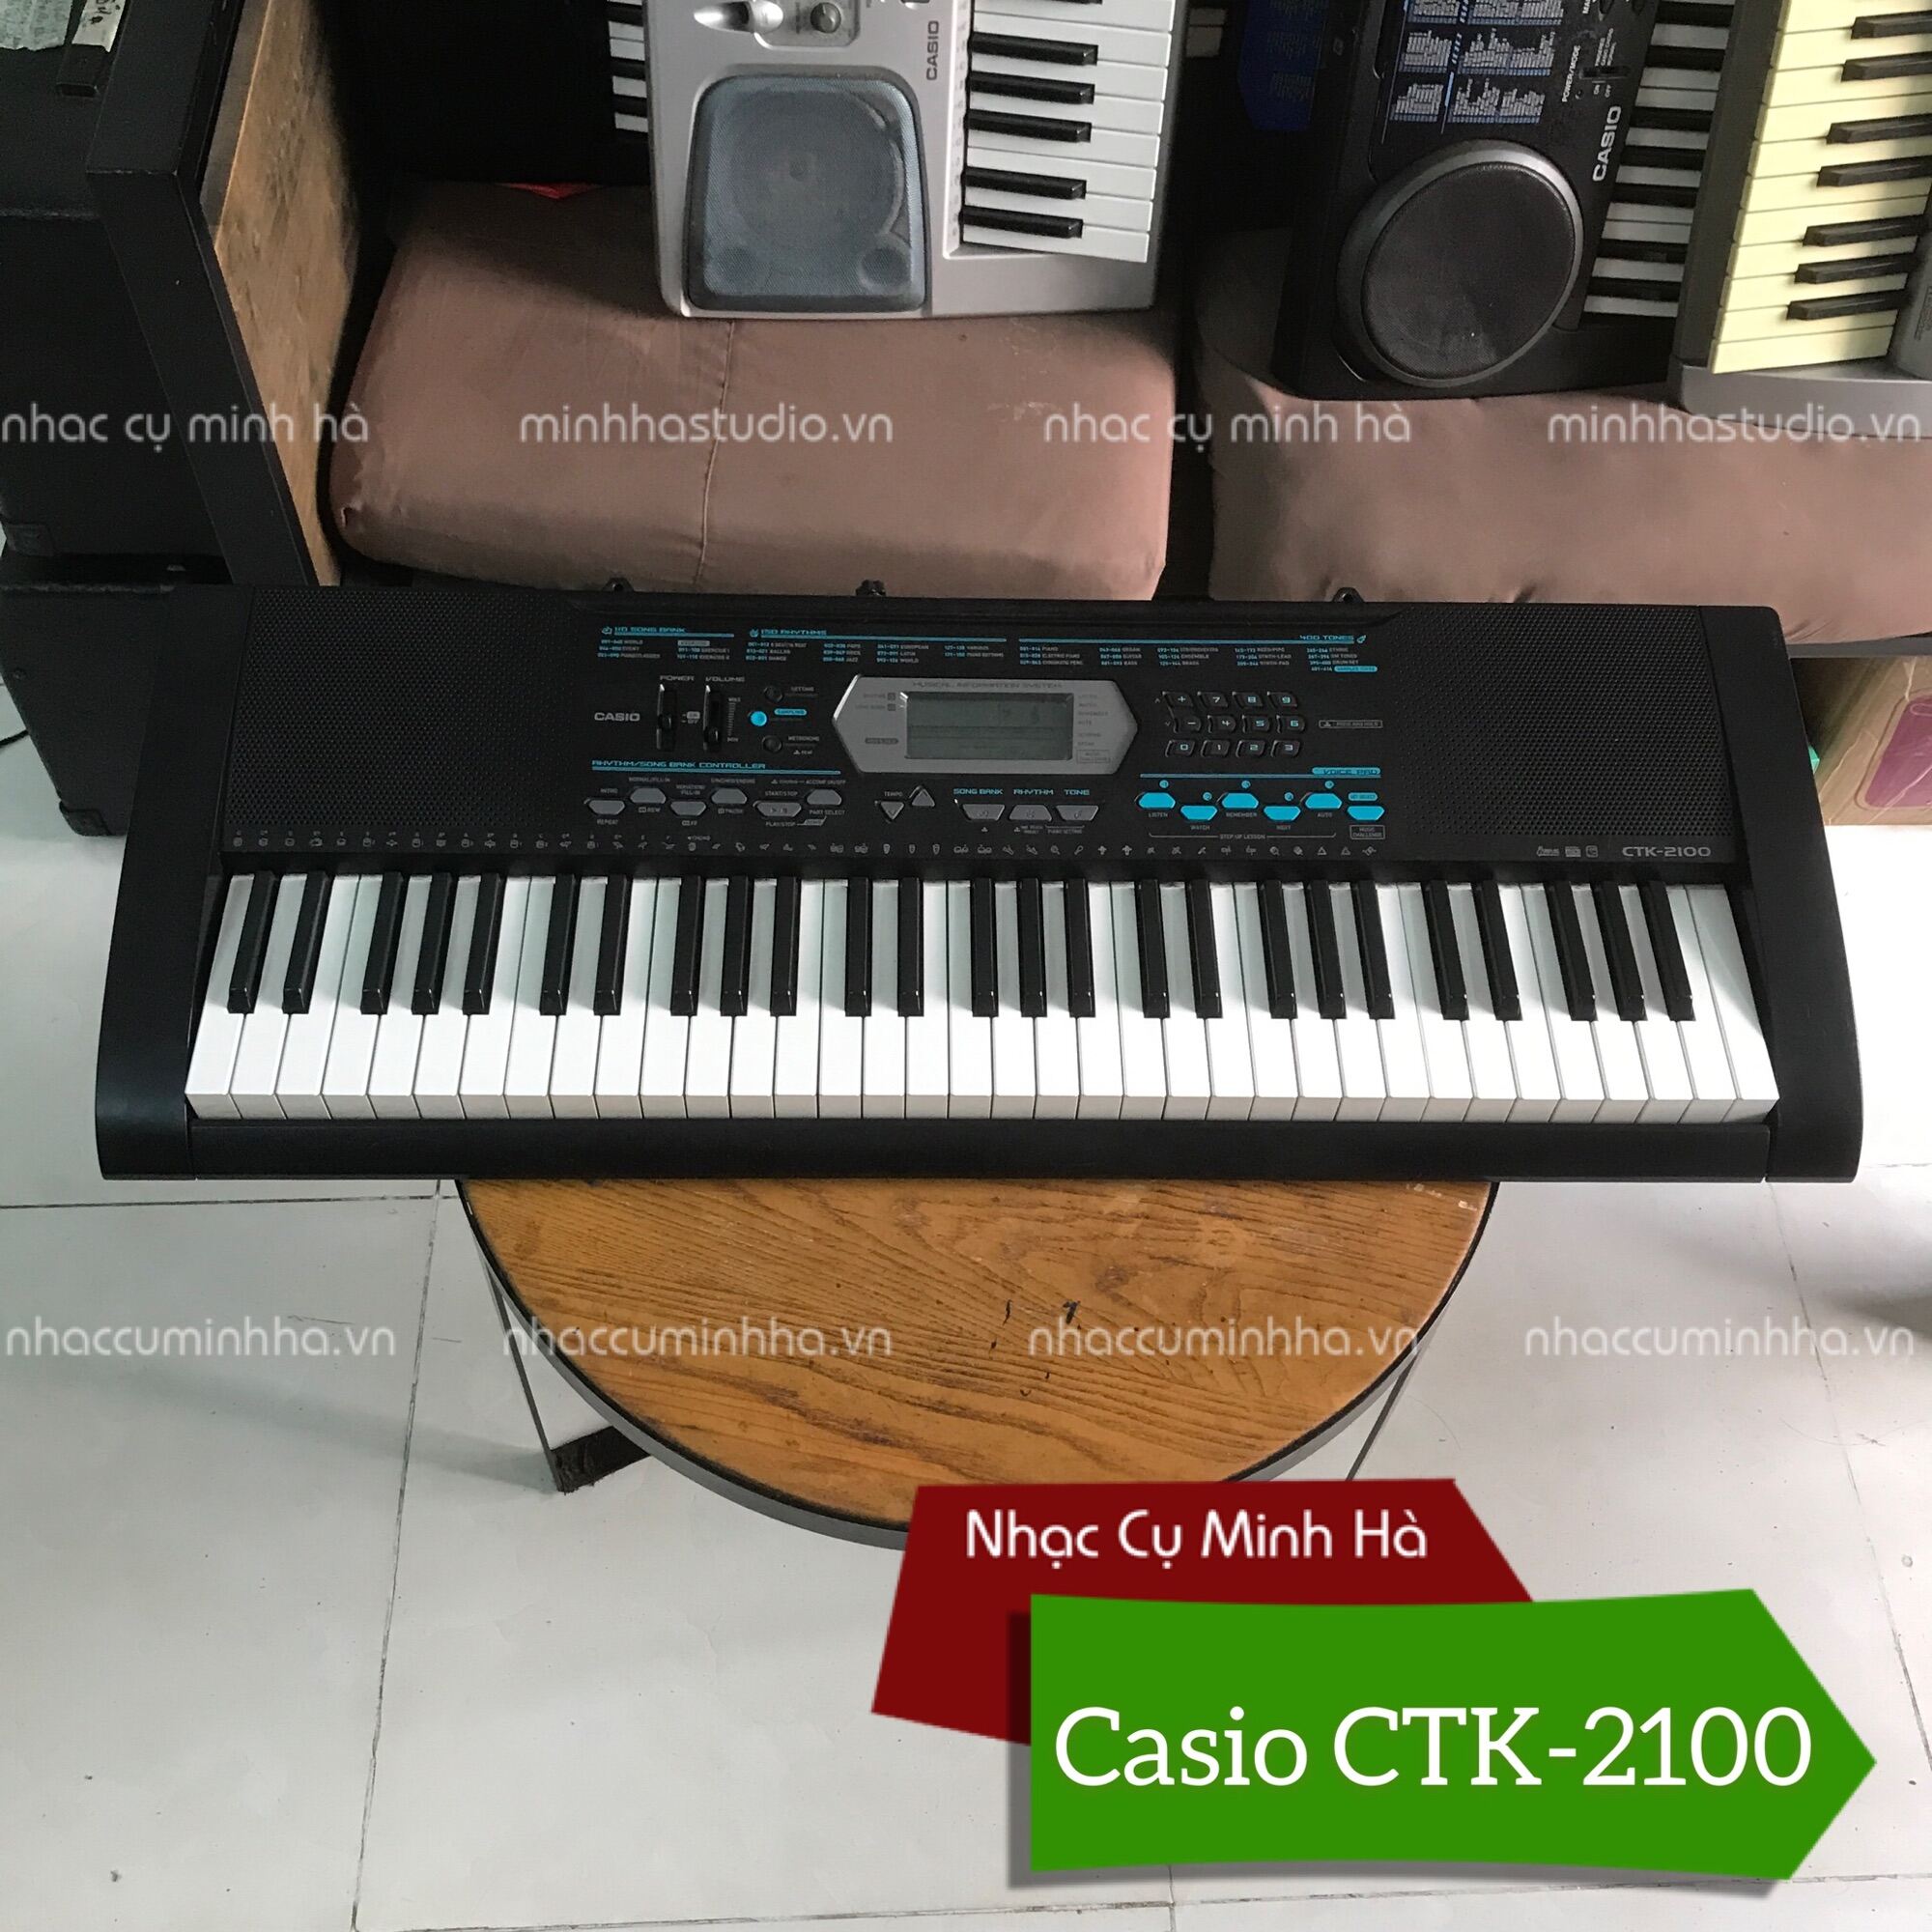 Organ Casio CTK-2100 cao cấp, 61 phím cảm ứng, 400 tiếng, 150 điệu, âm thanh rất hay